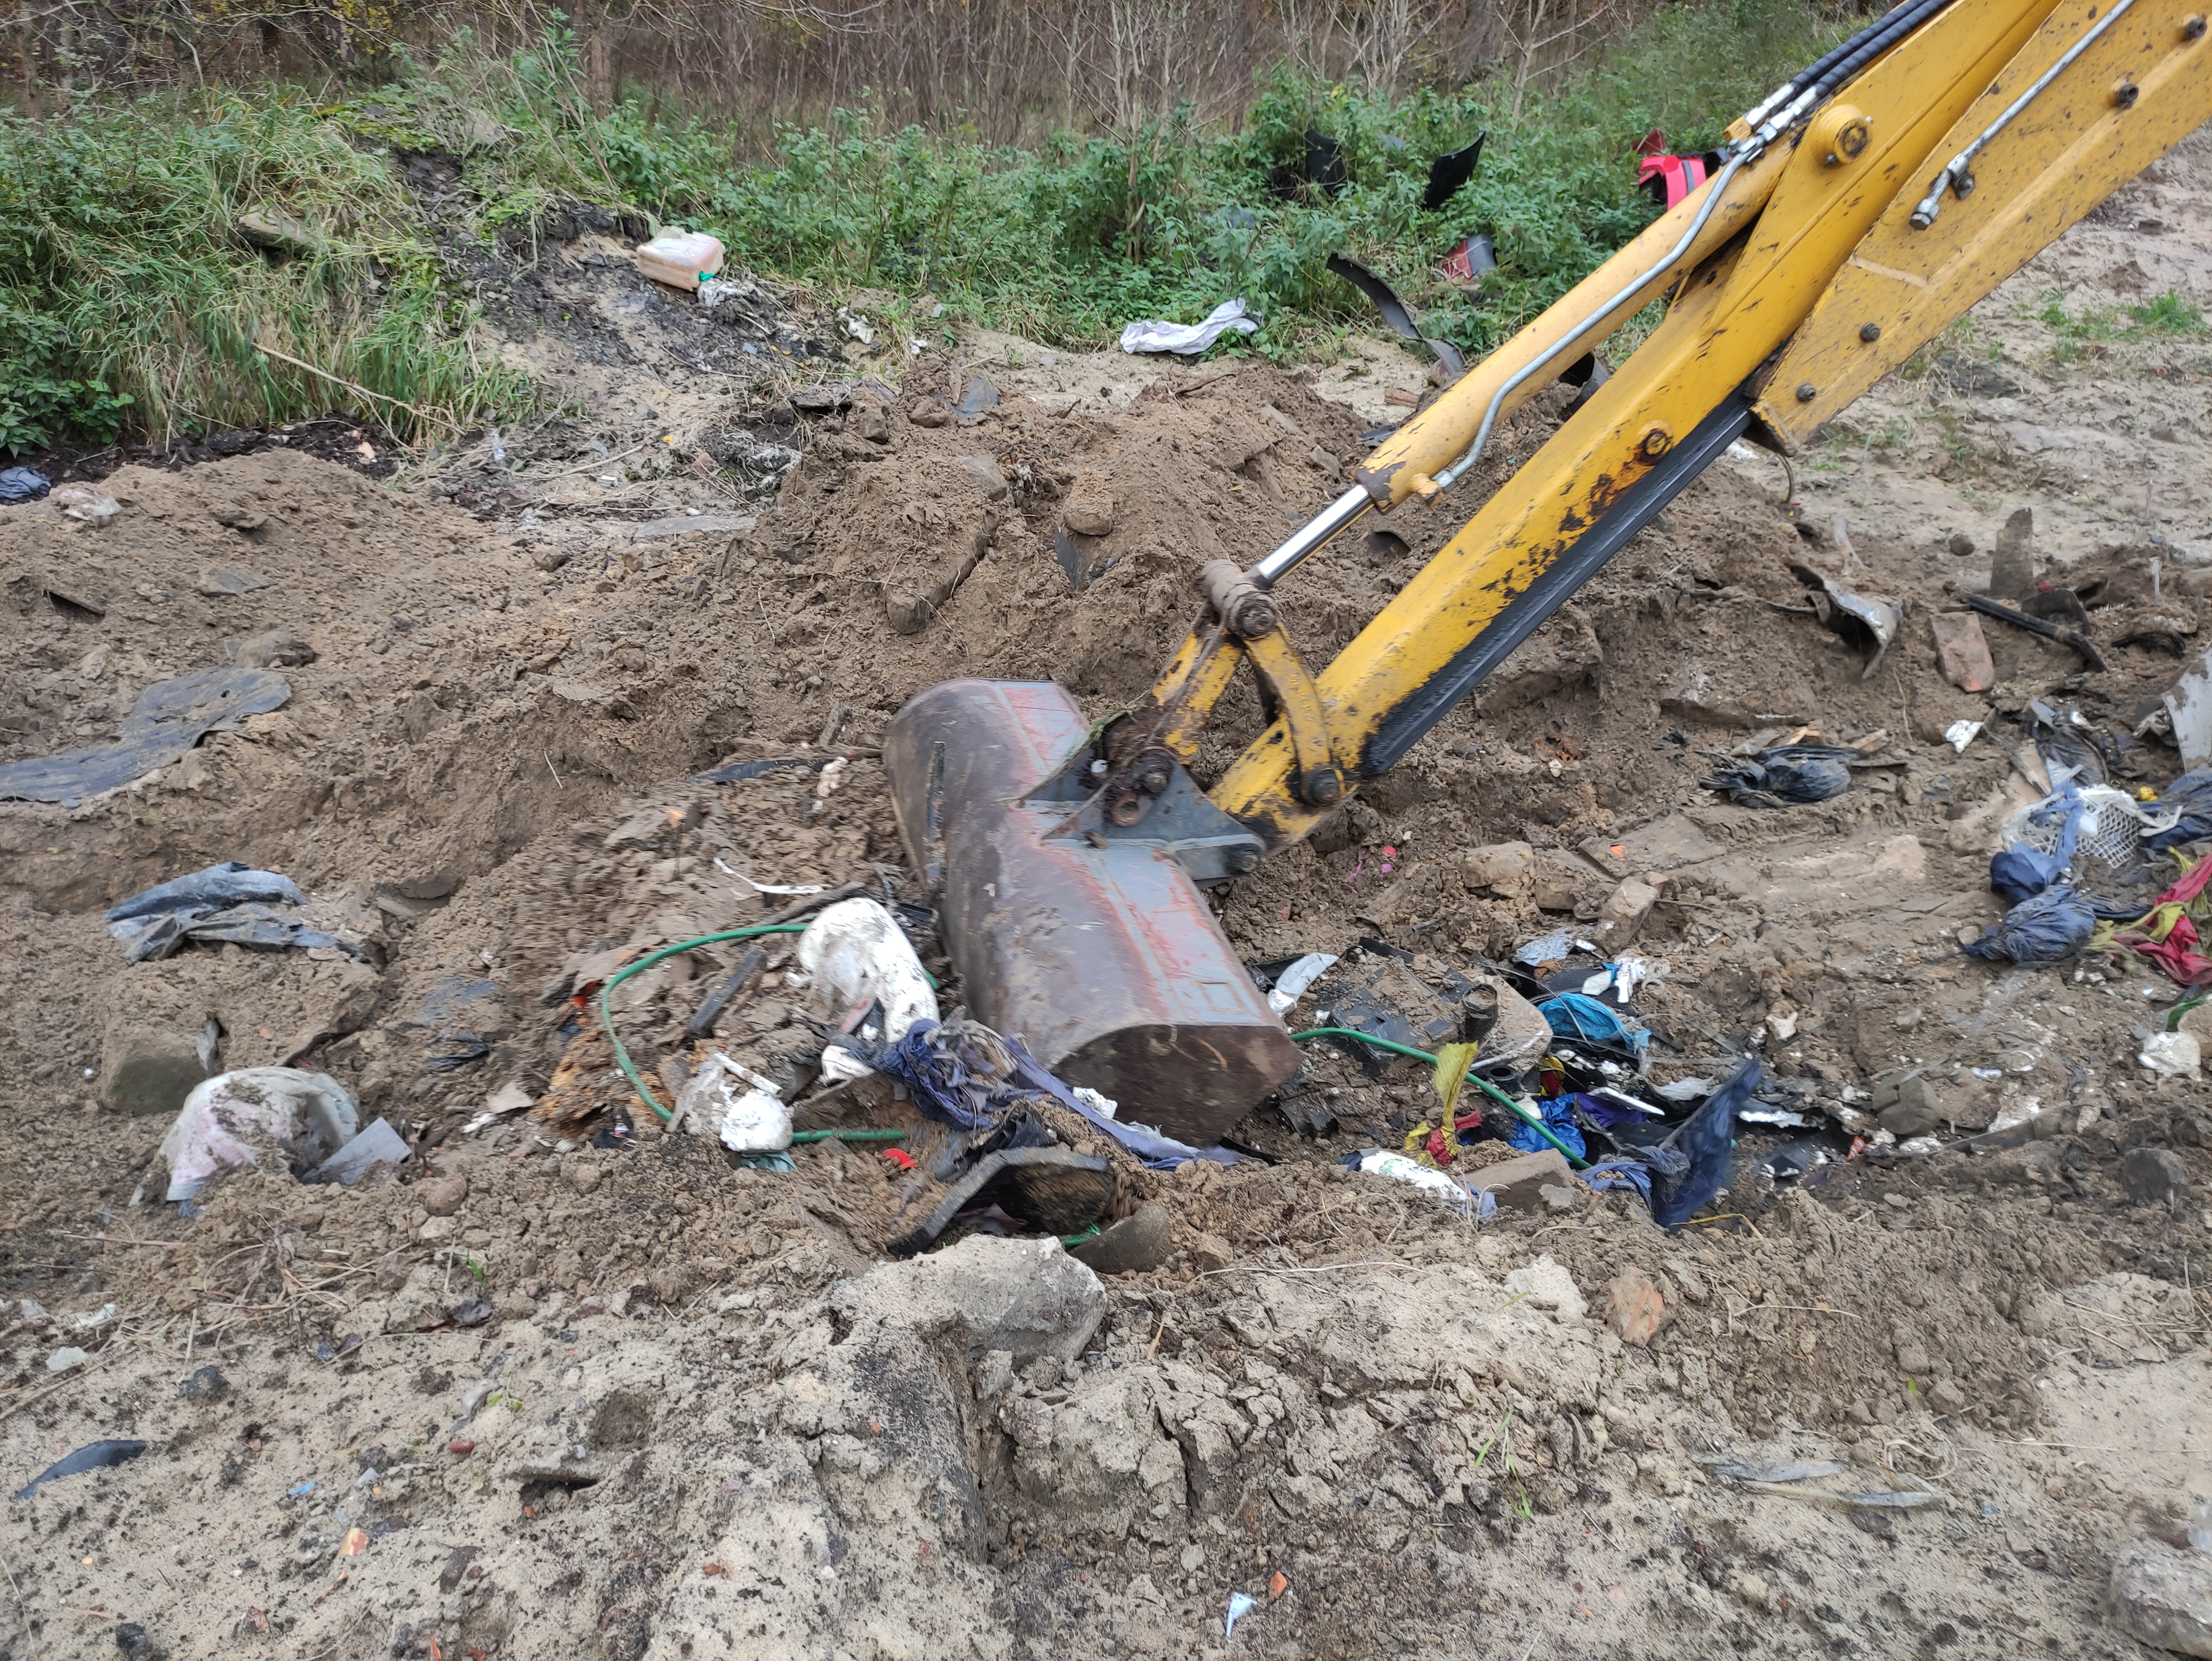 Tony zakopanych odpadów po nielegalnym demontażu aut ujawnili Inspektorzy WIOŚ w Szczecinie